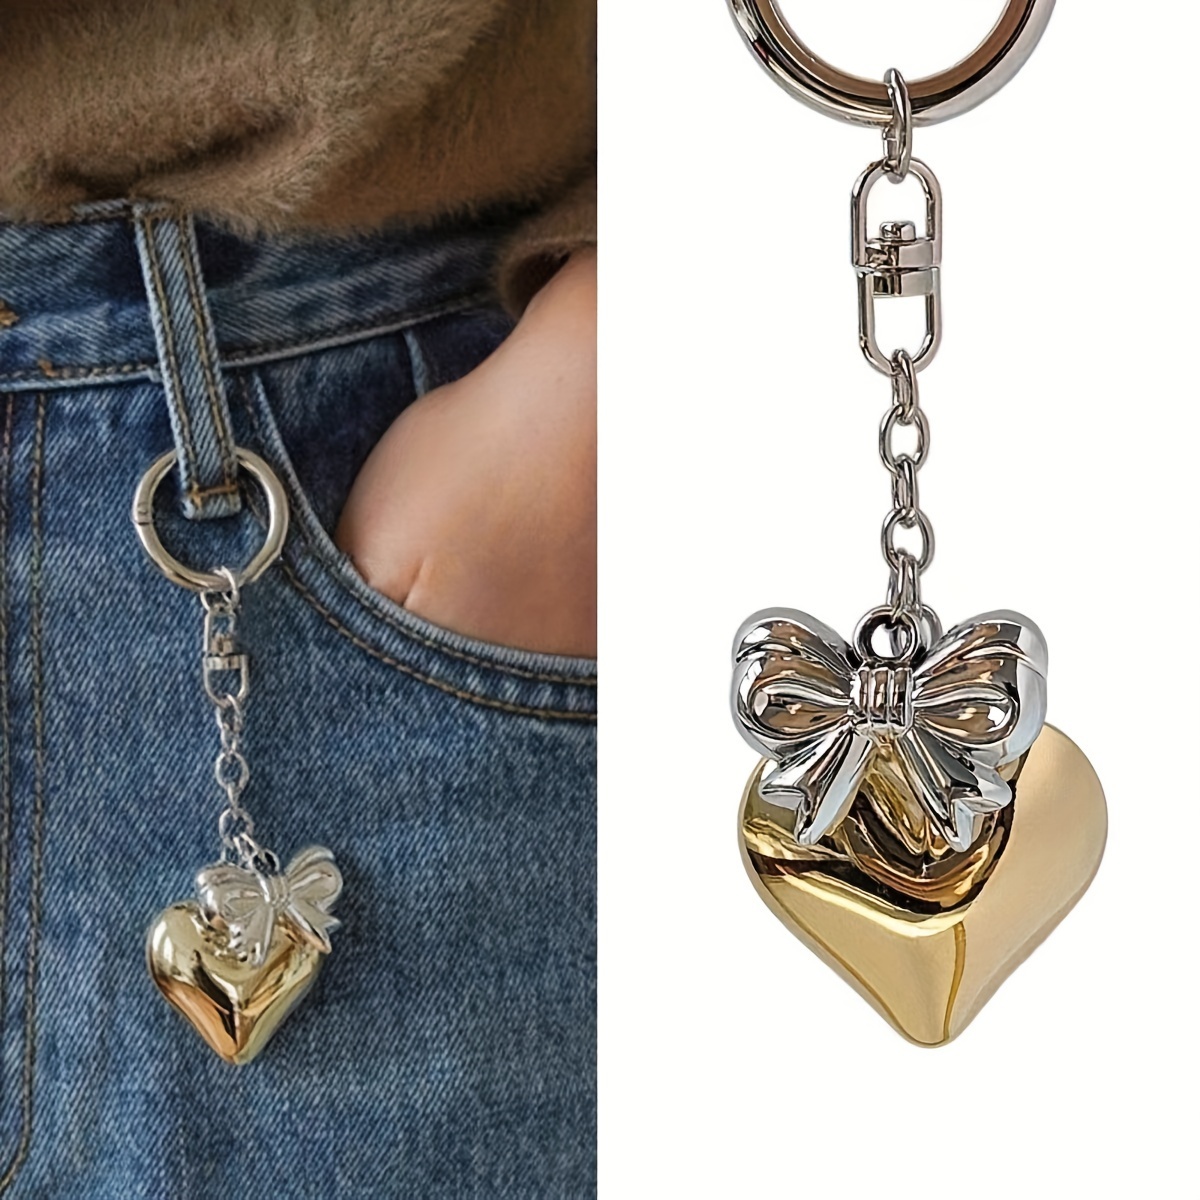 Liebhaber Exklusive Mode Schleife Liebe Perlen Schlüsselanhänger Anhänger  Handgemachte Kreative Schmuck Mädchen Herz Anhänger, Kaufen Sie Die  Neuesten Trends